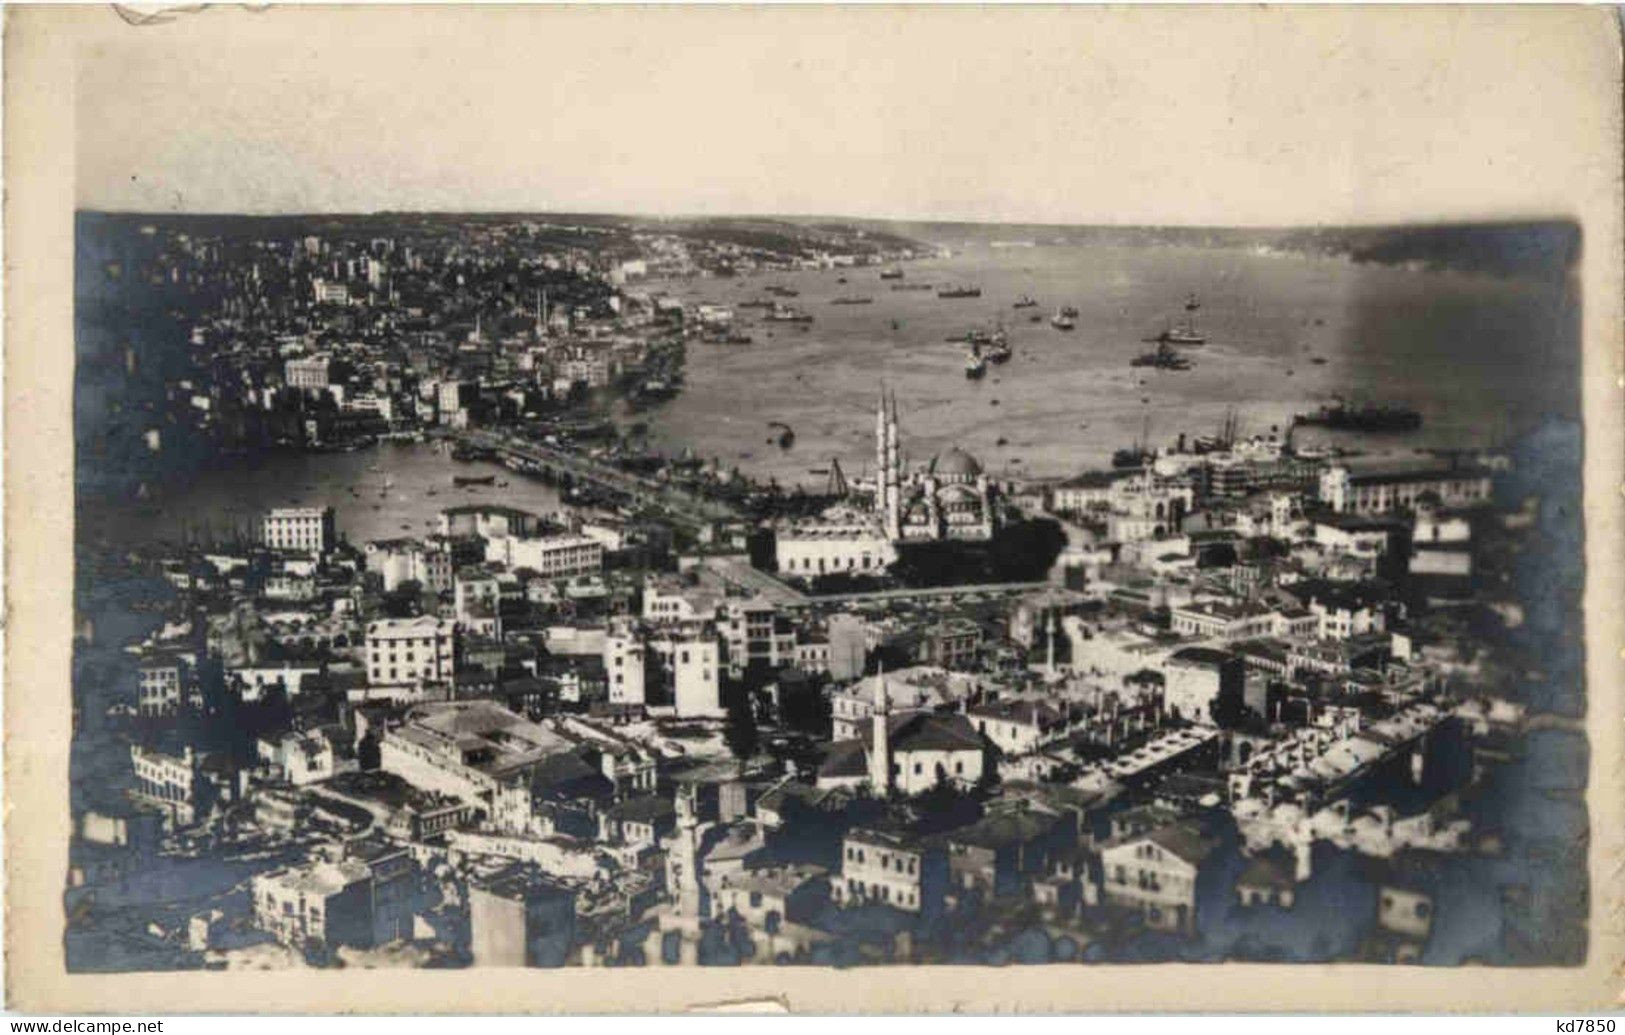 Constantinople - Türkei